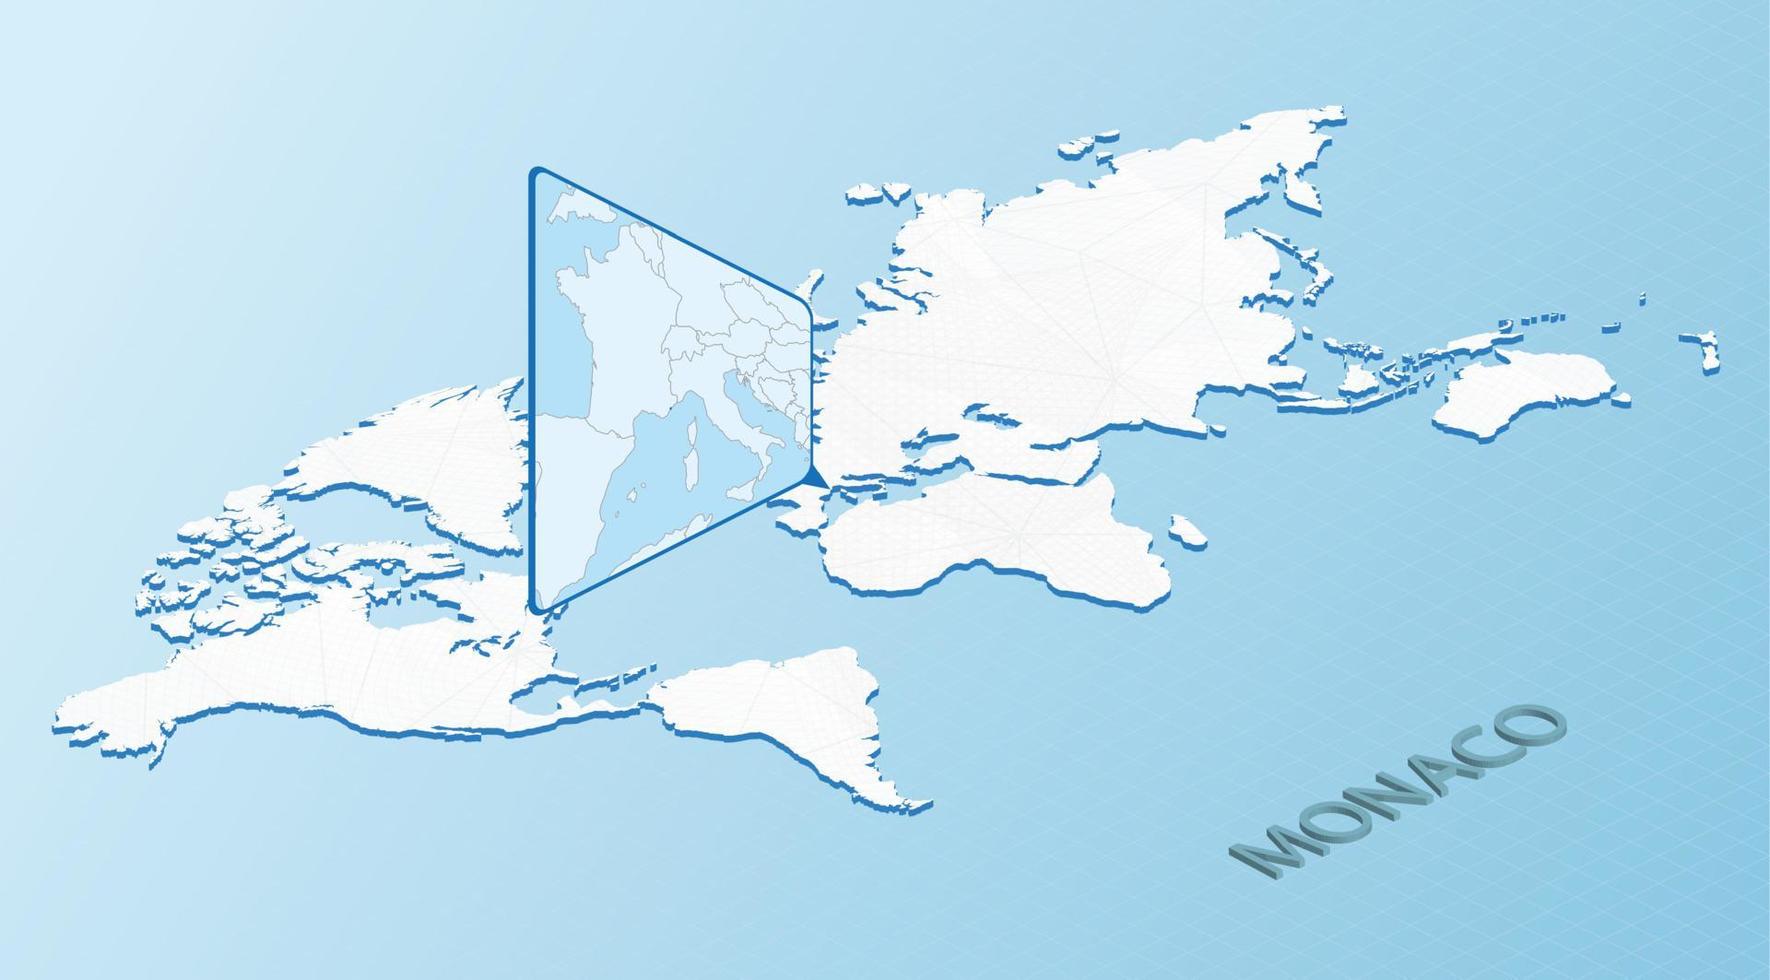 carte du monde en style isométrique avec carte détaillée de monaco. carte de monaco bleu clair avec carte du monde abstraite. vecteur